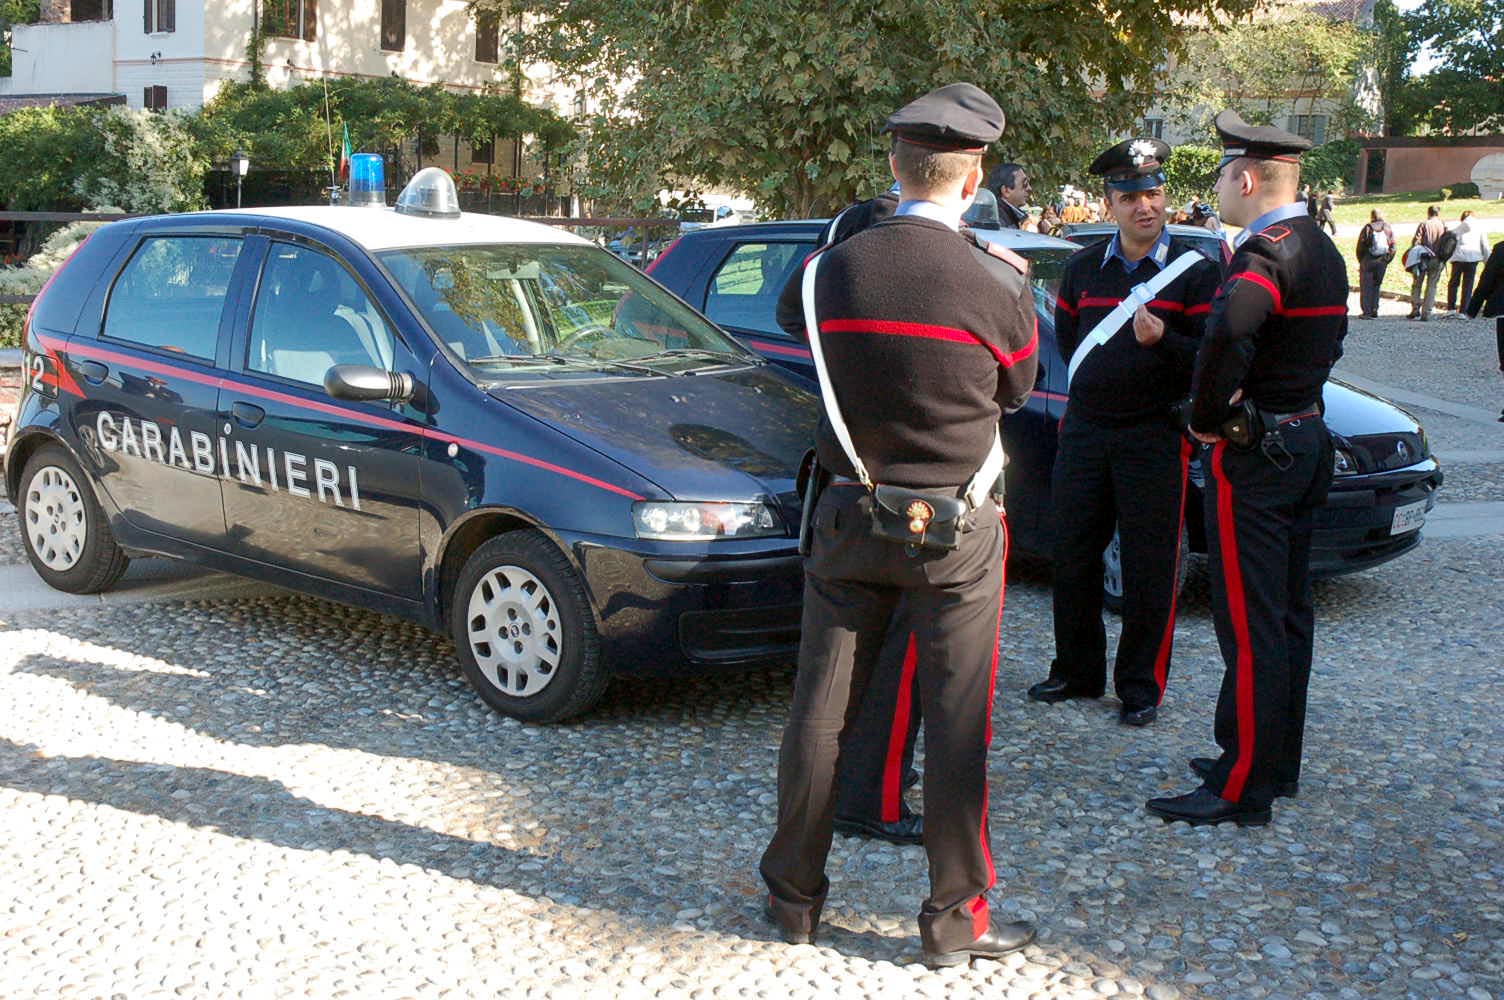  Non rientra in comunità dopo un permesso, carabinieri catturano ricercato alla Sanità